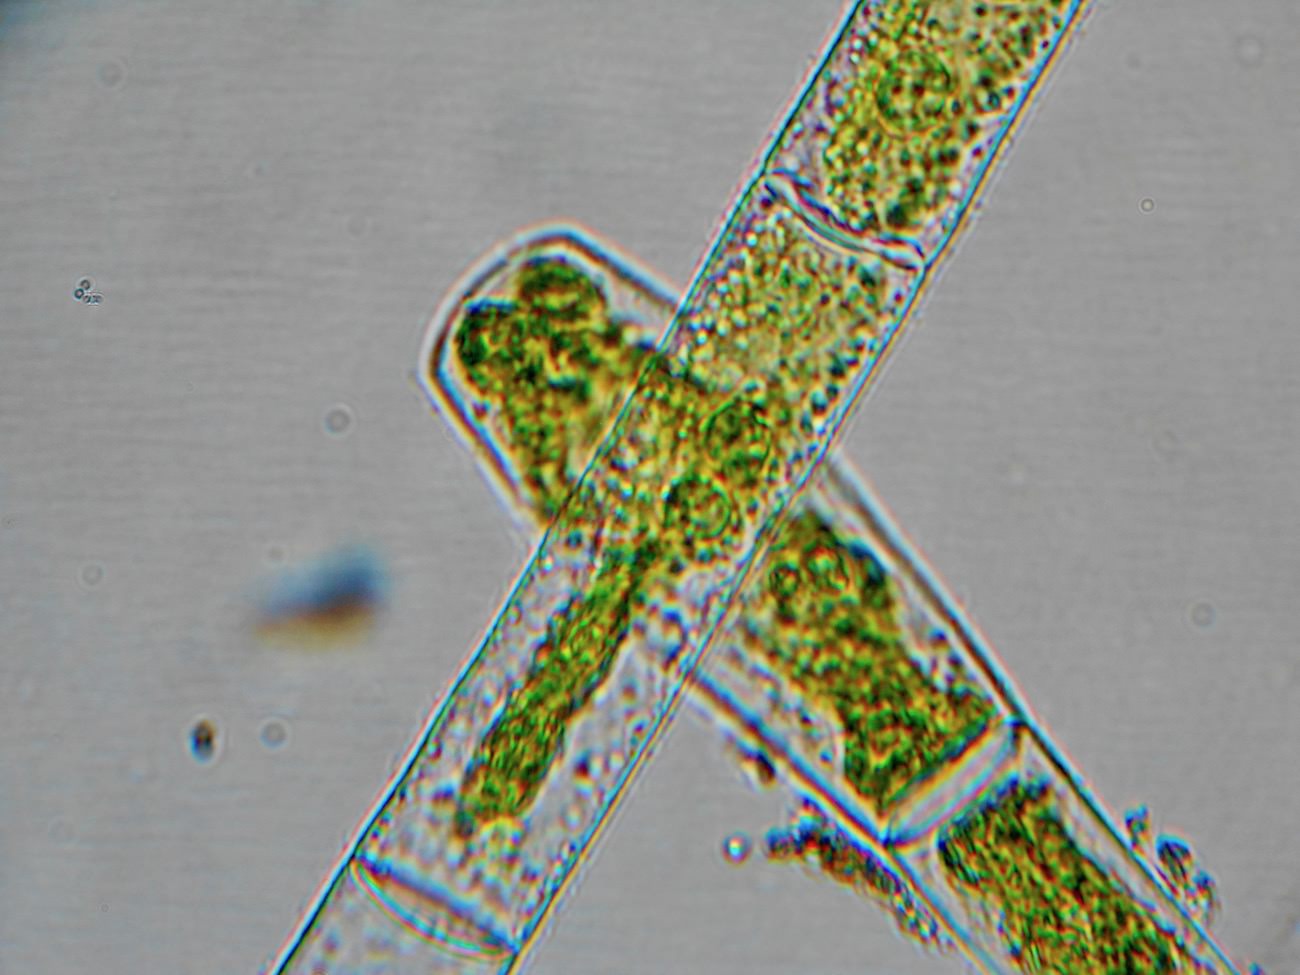 アオミドロの顕微鏡写真ミクロ観察3